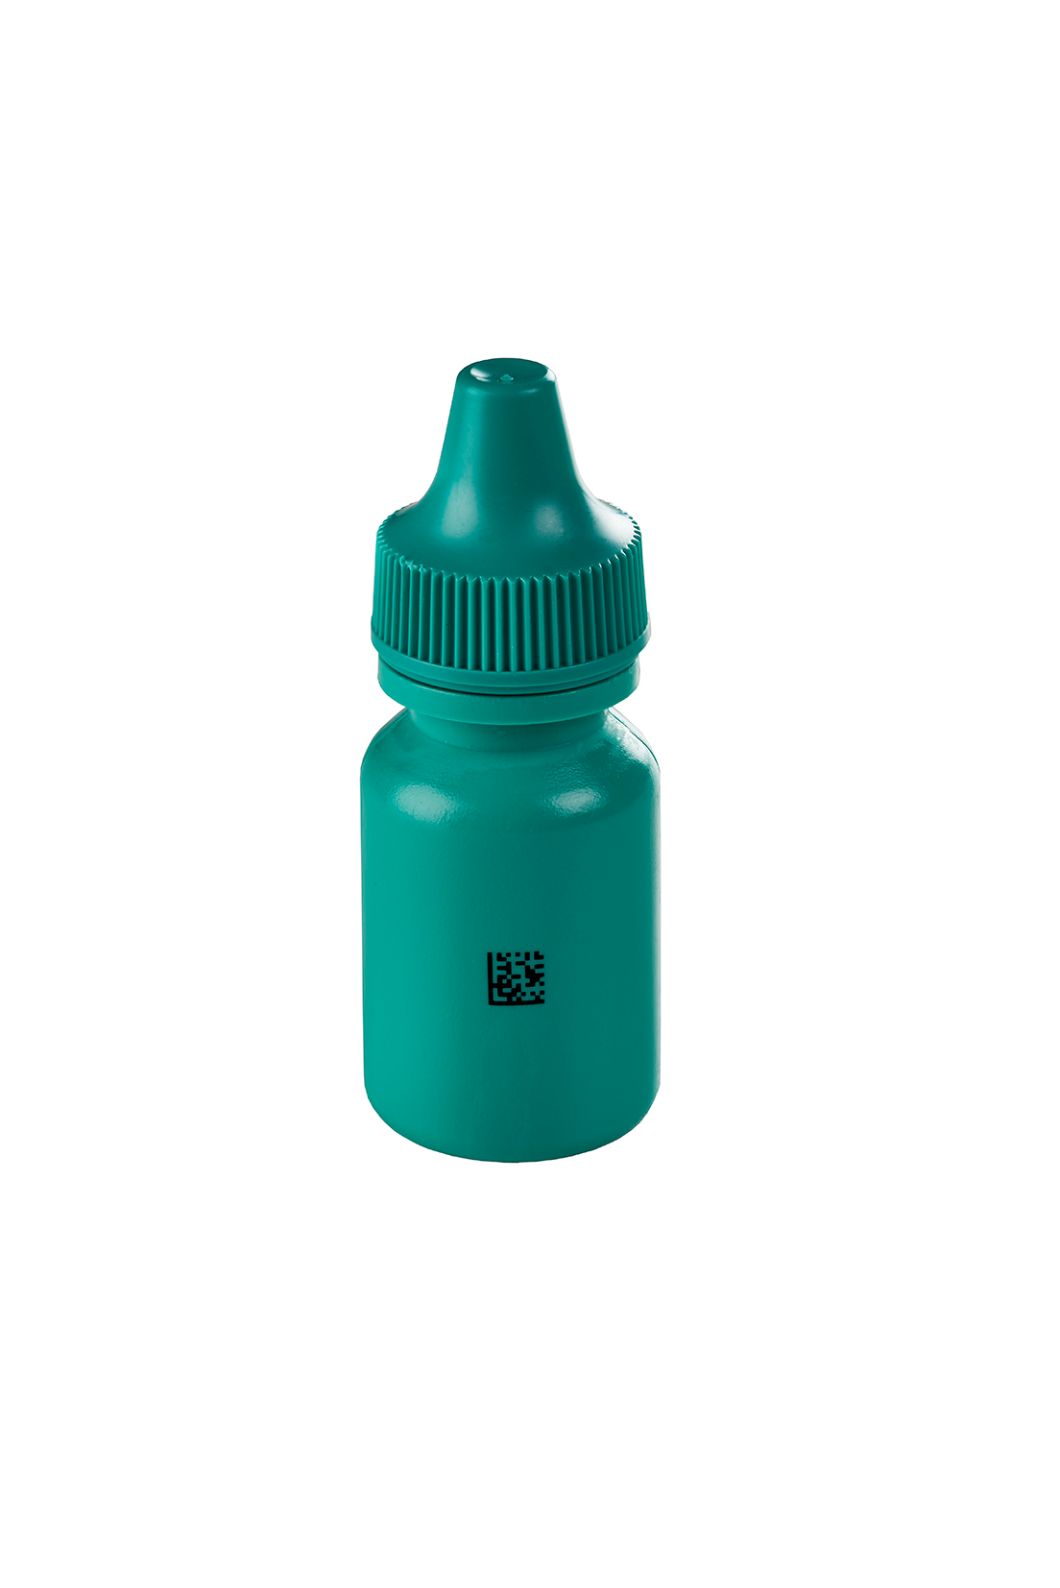 伟迪捷 7810 紫外激光UV喷码机在绿色的小瓶子二维码的标识图